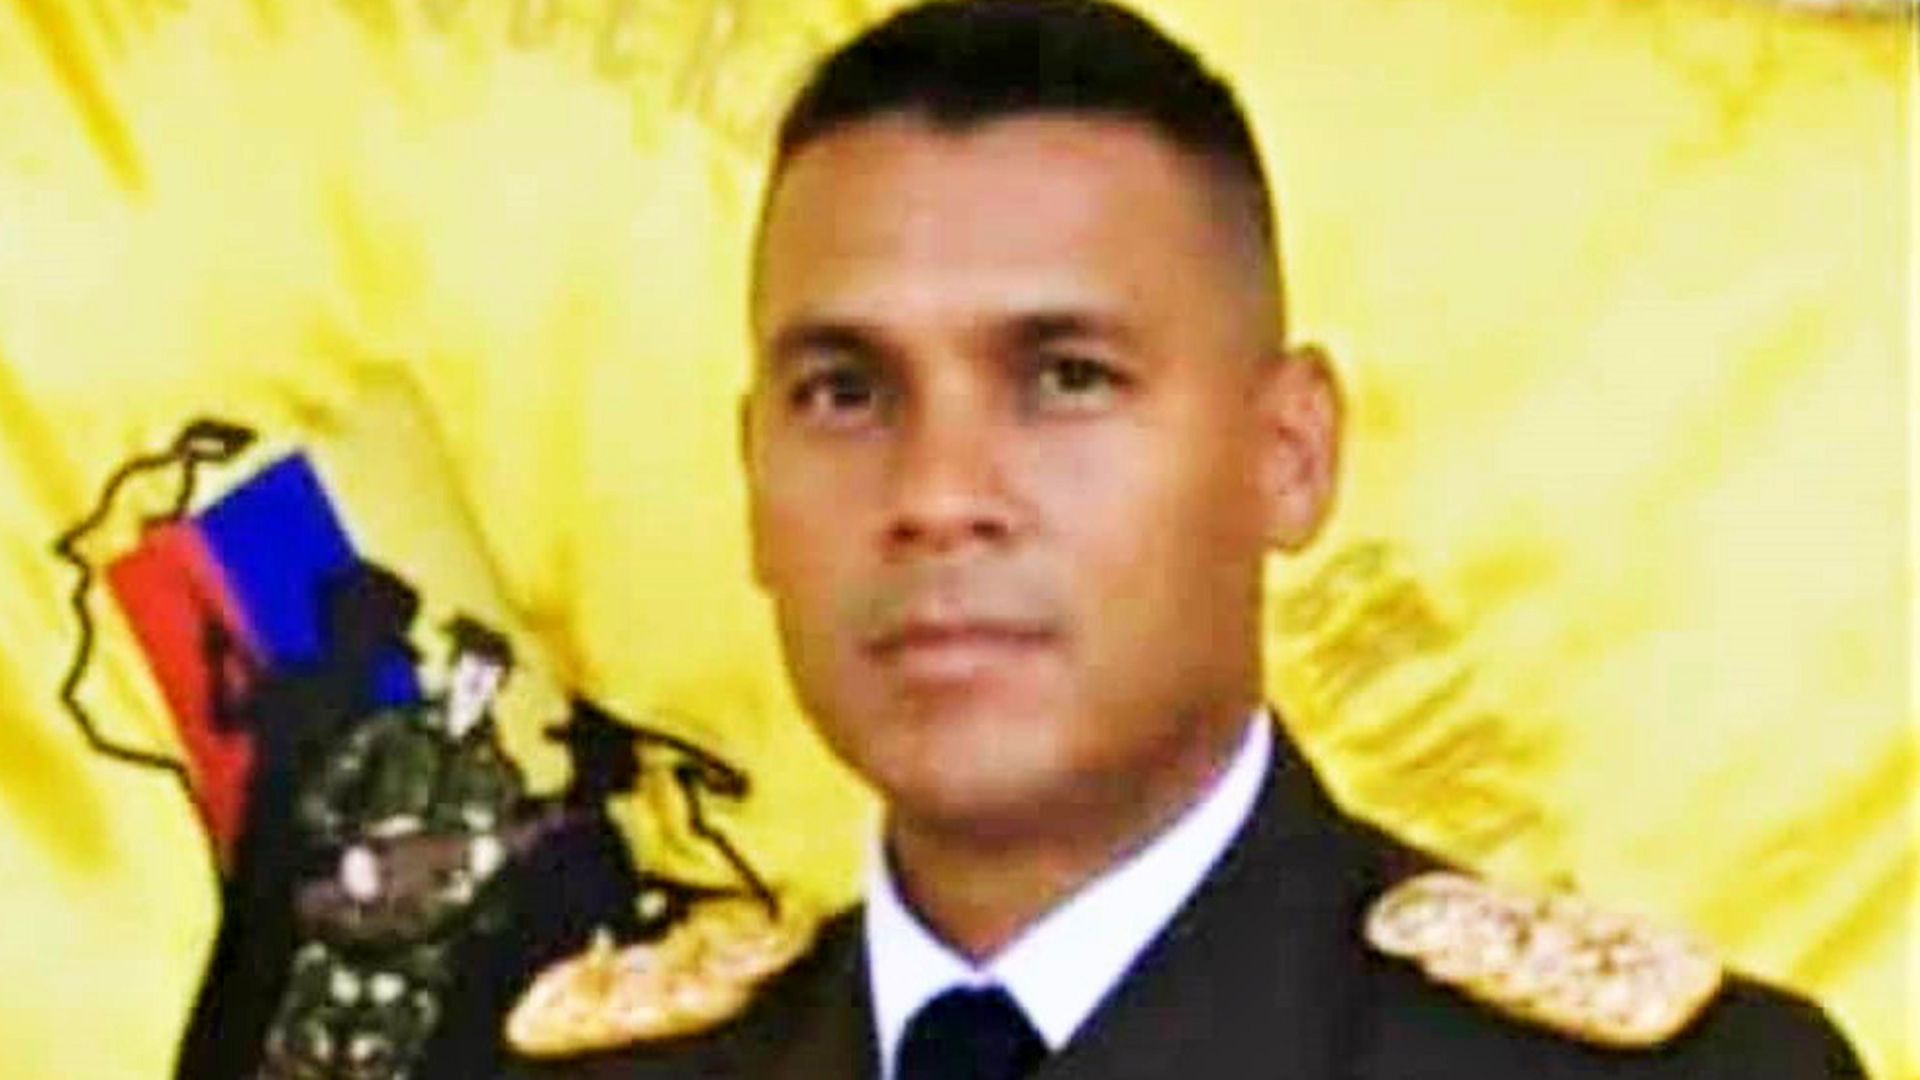 La tolerancia del Ejército con la guerrilla le costó la vida al comandante de un Fuerte Militar en Venezuela